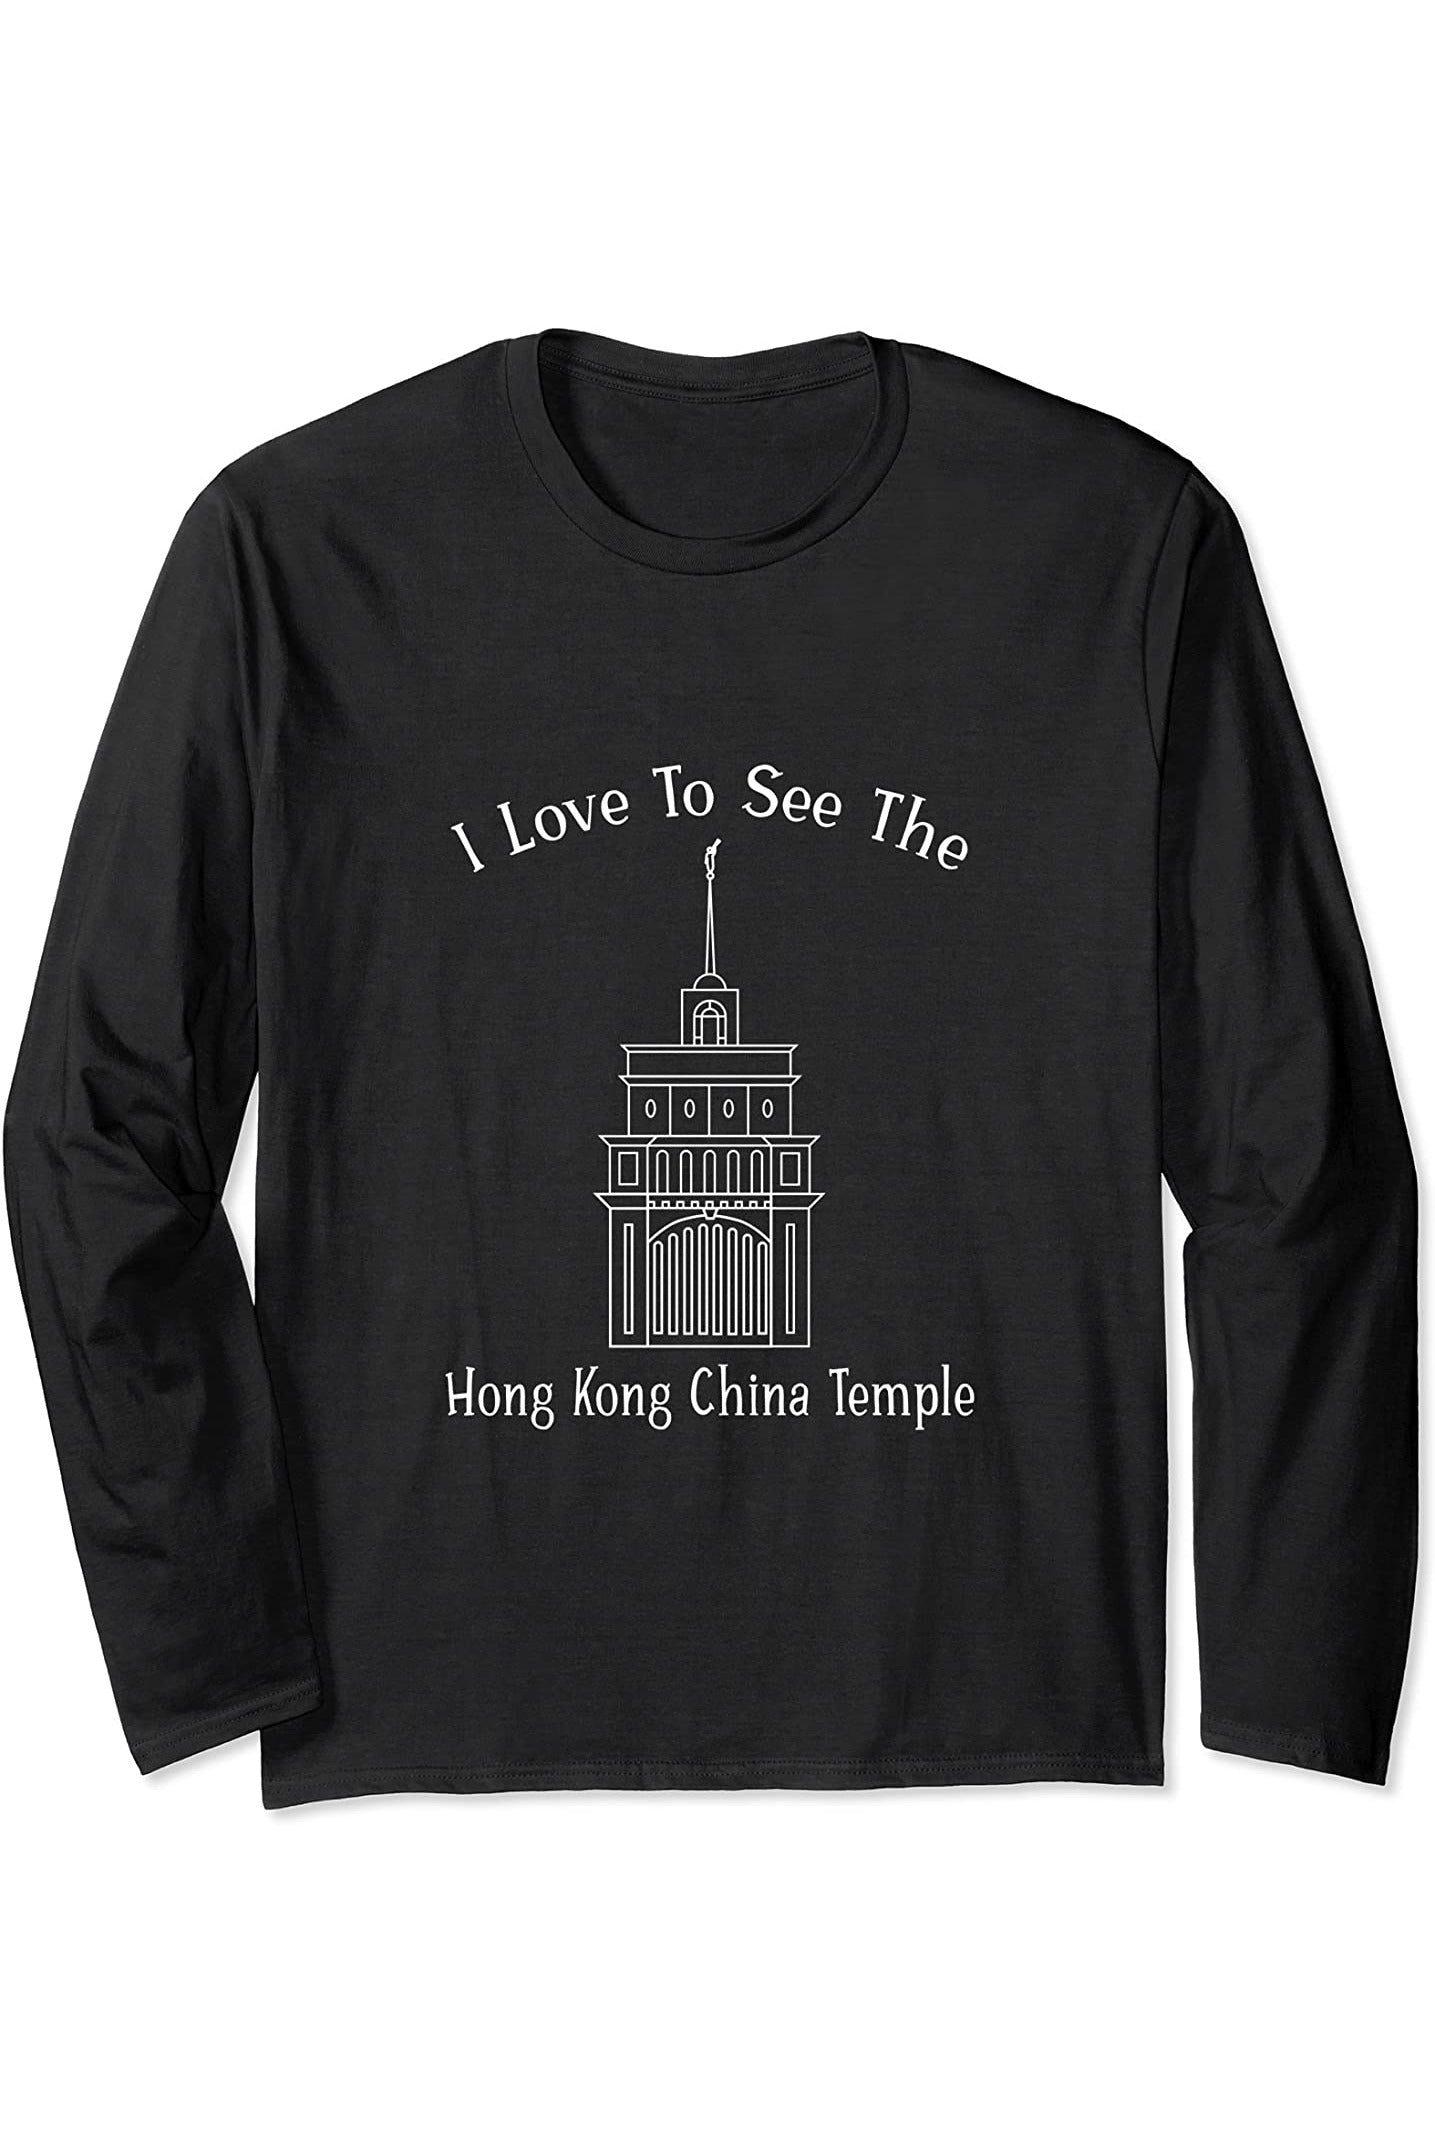 Hong Kong China Temple Long Sleeve T-Shirt - Happy Style (English) US